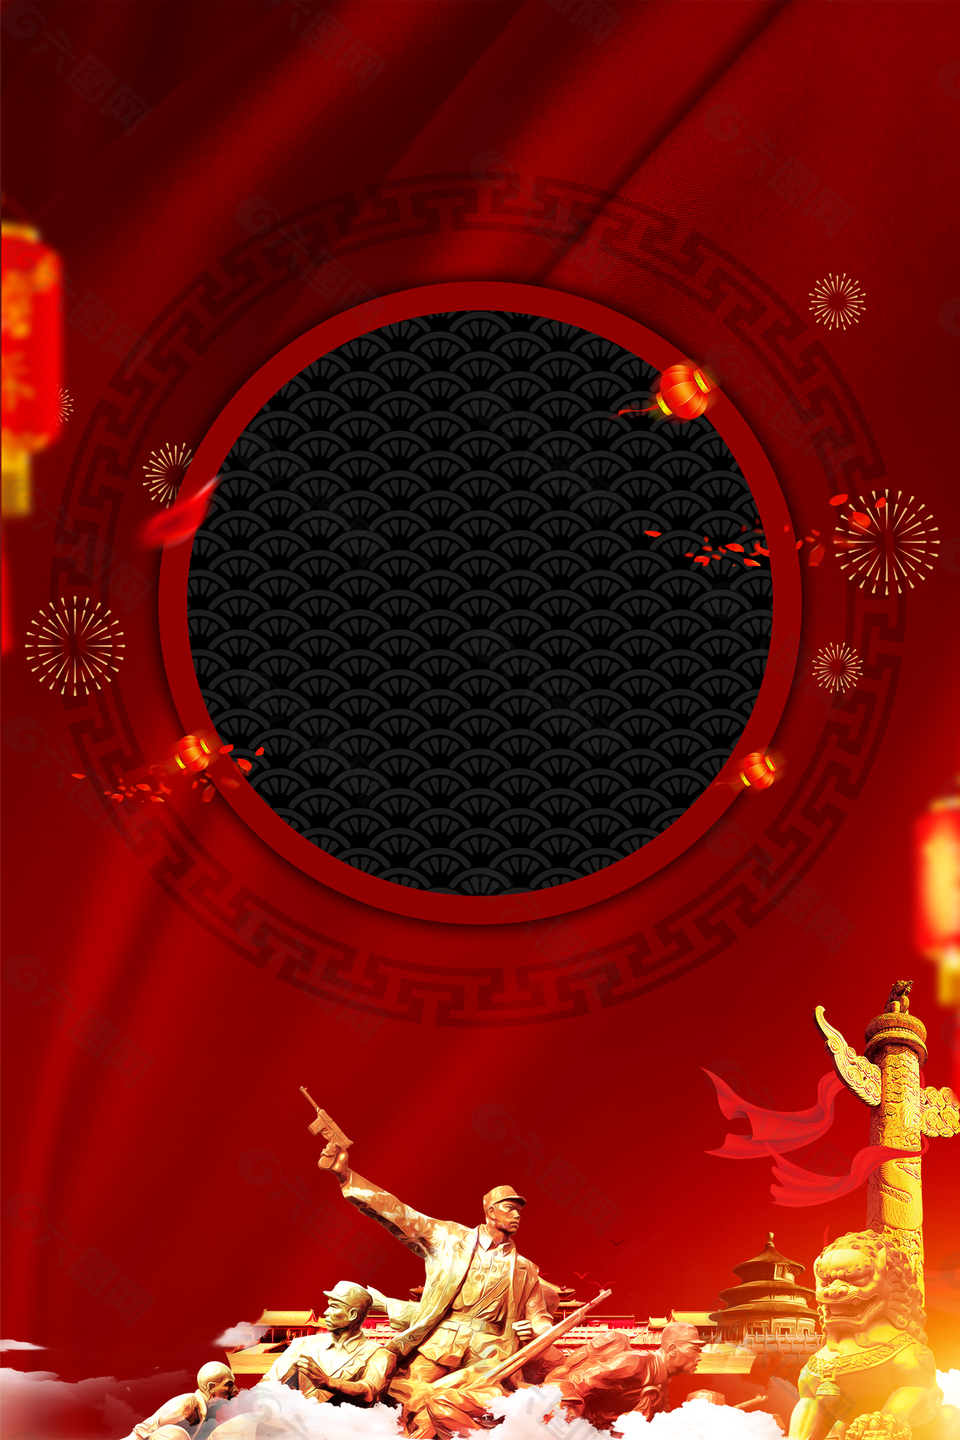 红色十一国庆节党政背景模板